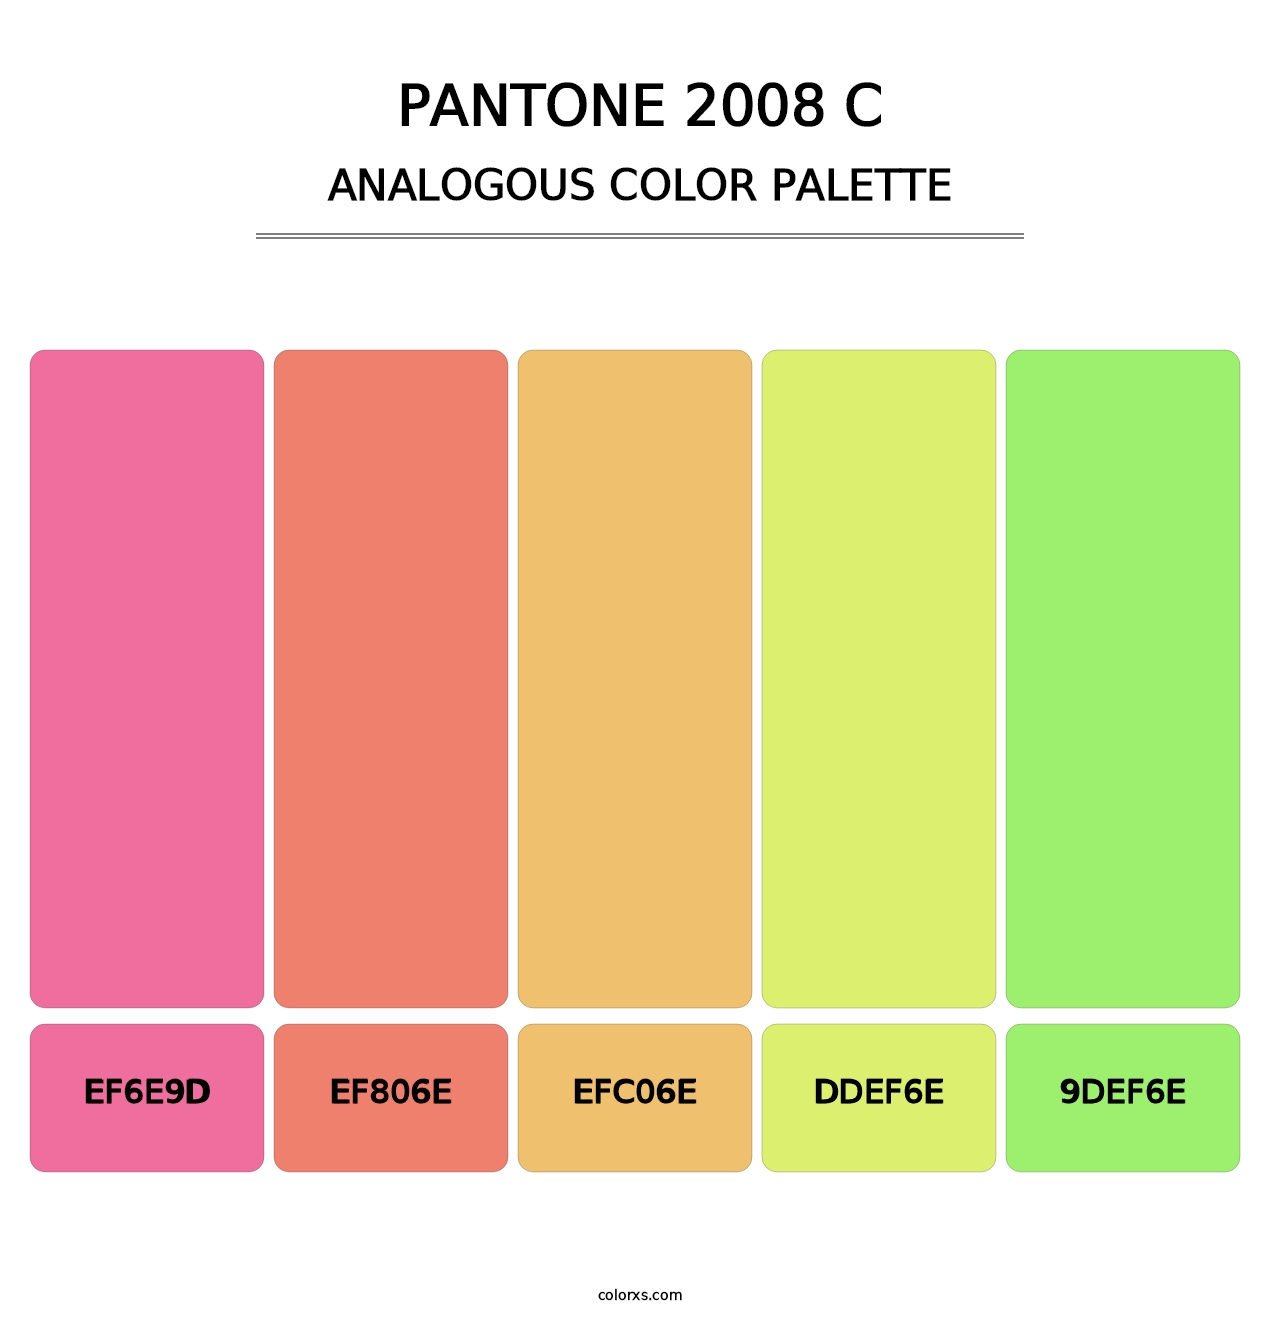 PANTONE 2008 C - Analogous Color Palette